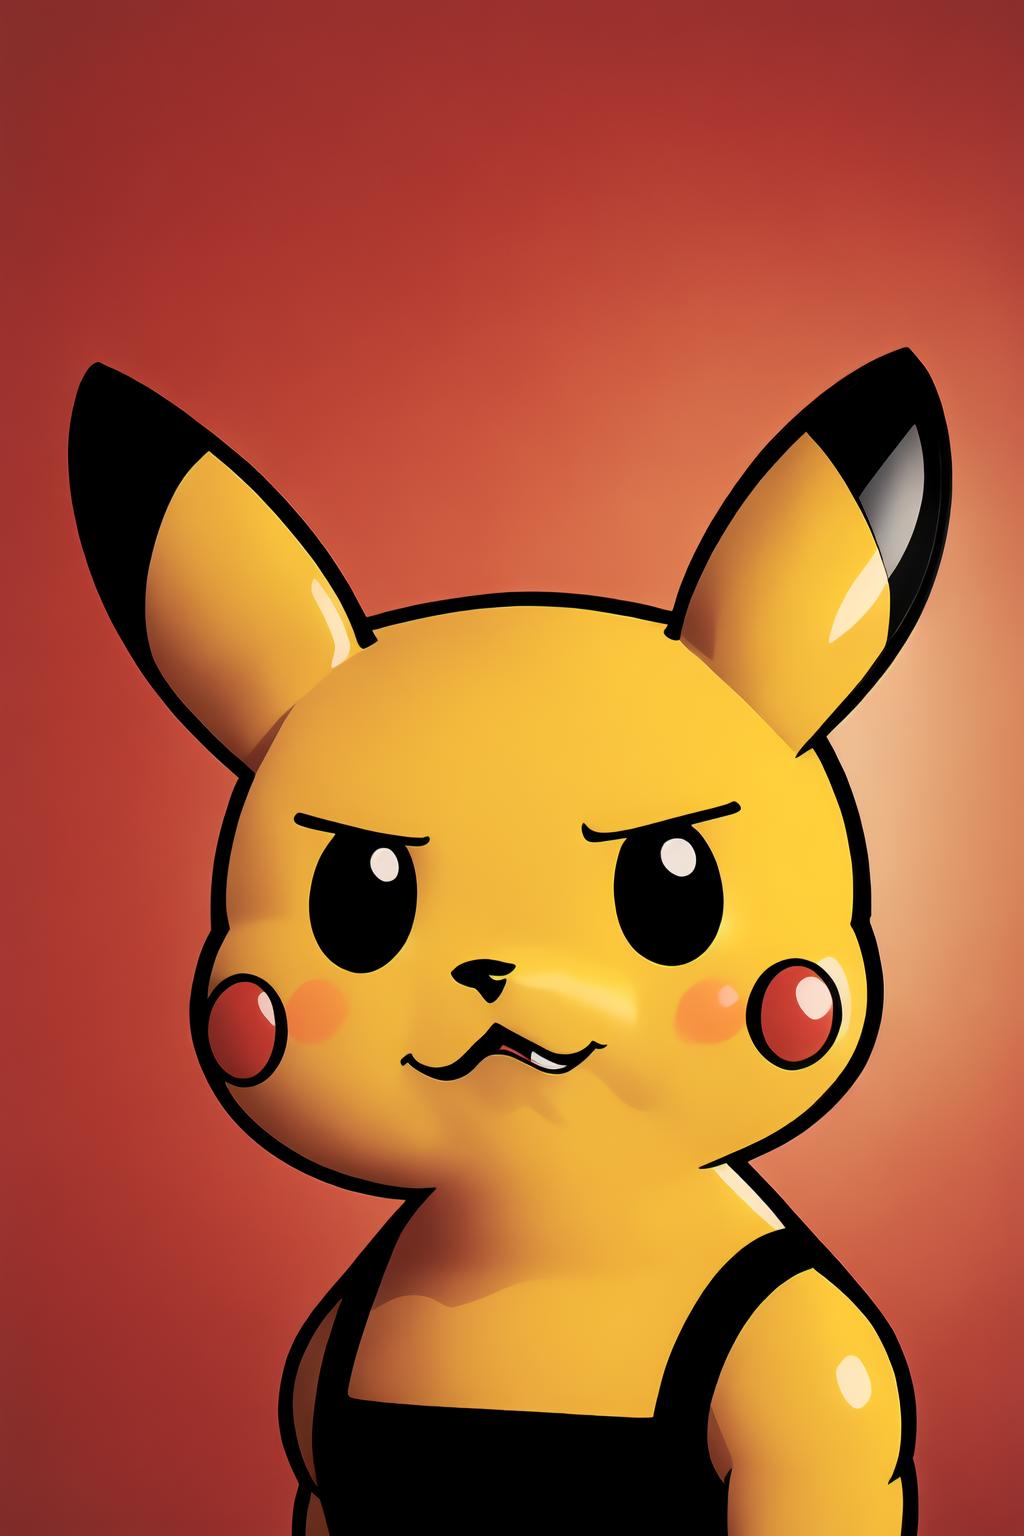 Pokemon-Muscular Pikachu(巨巨皮卡丘) image by PettankoPaizuri